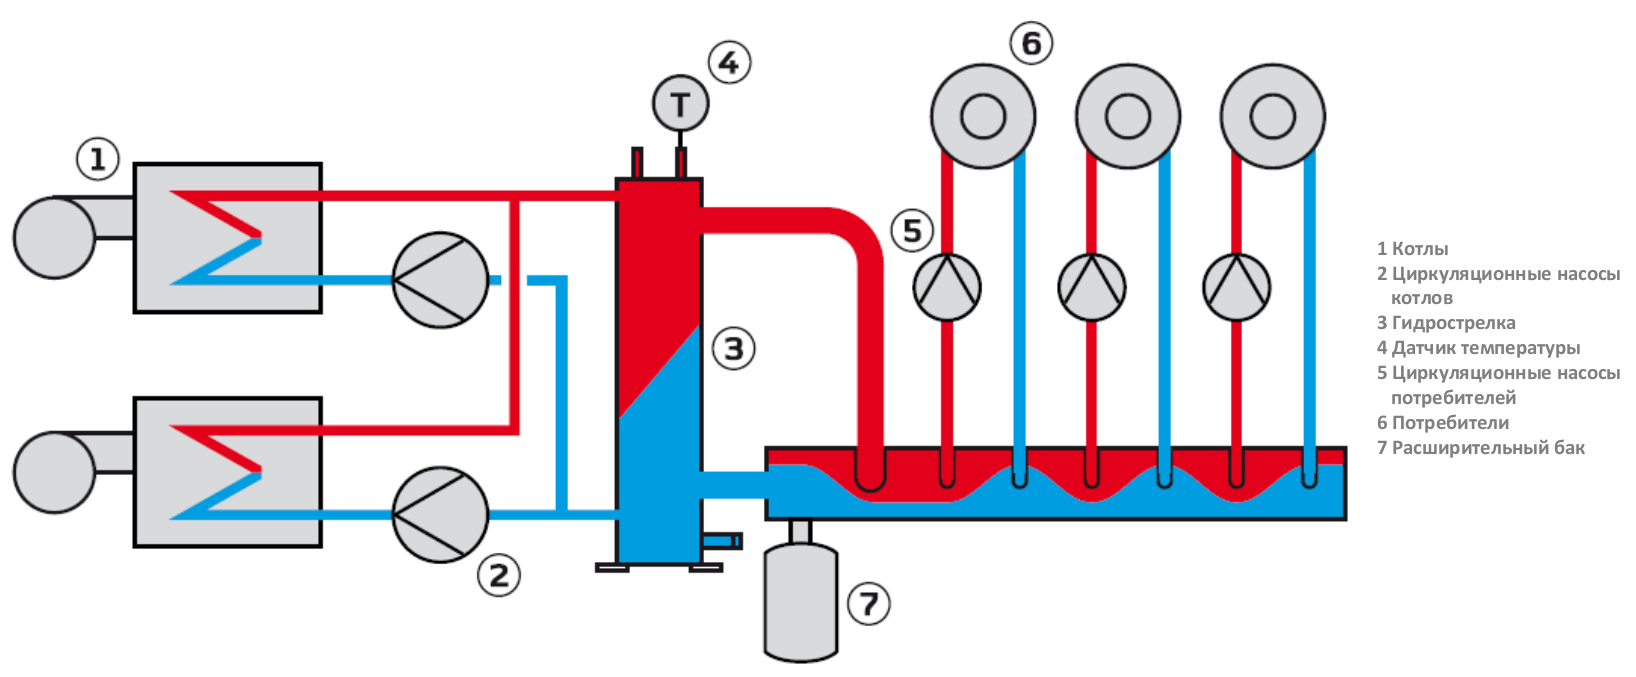 Гидрострелка для отопления, зачем она нужна и какие бывают